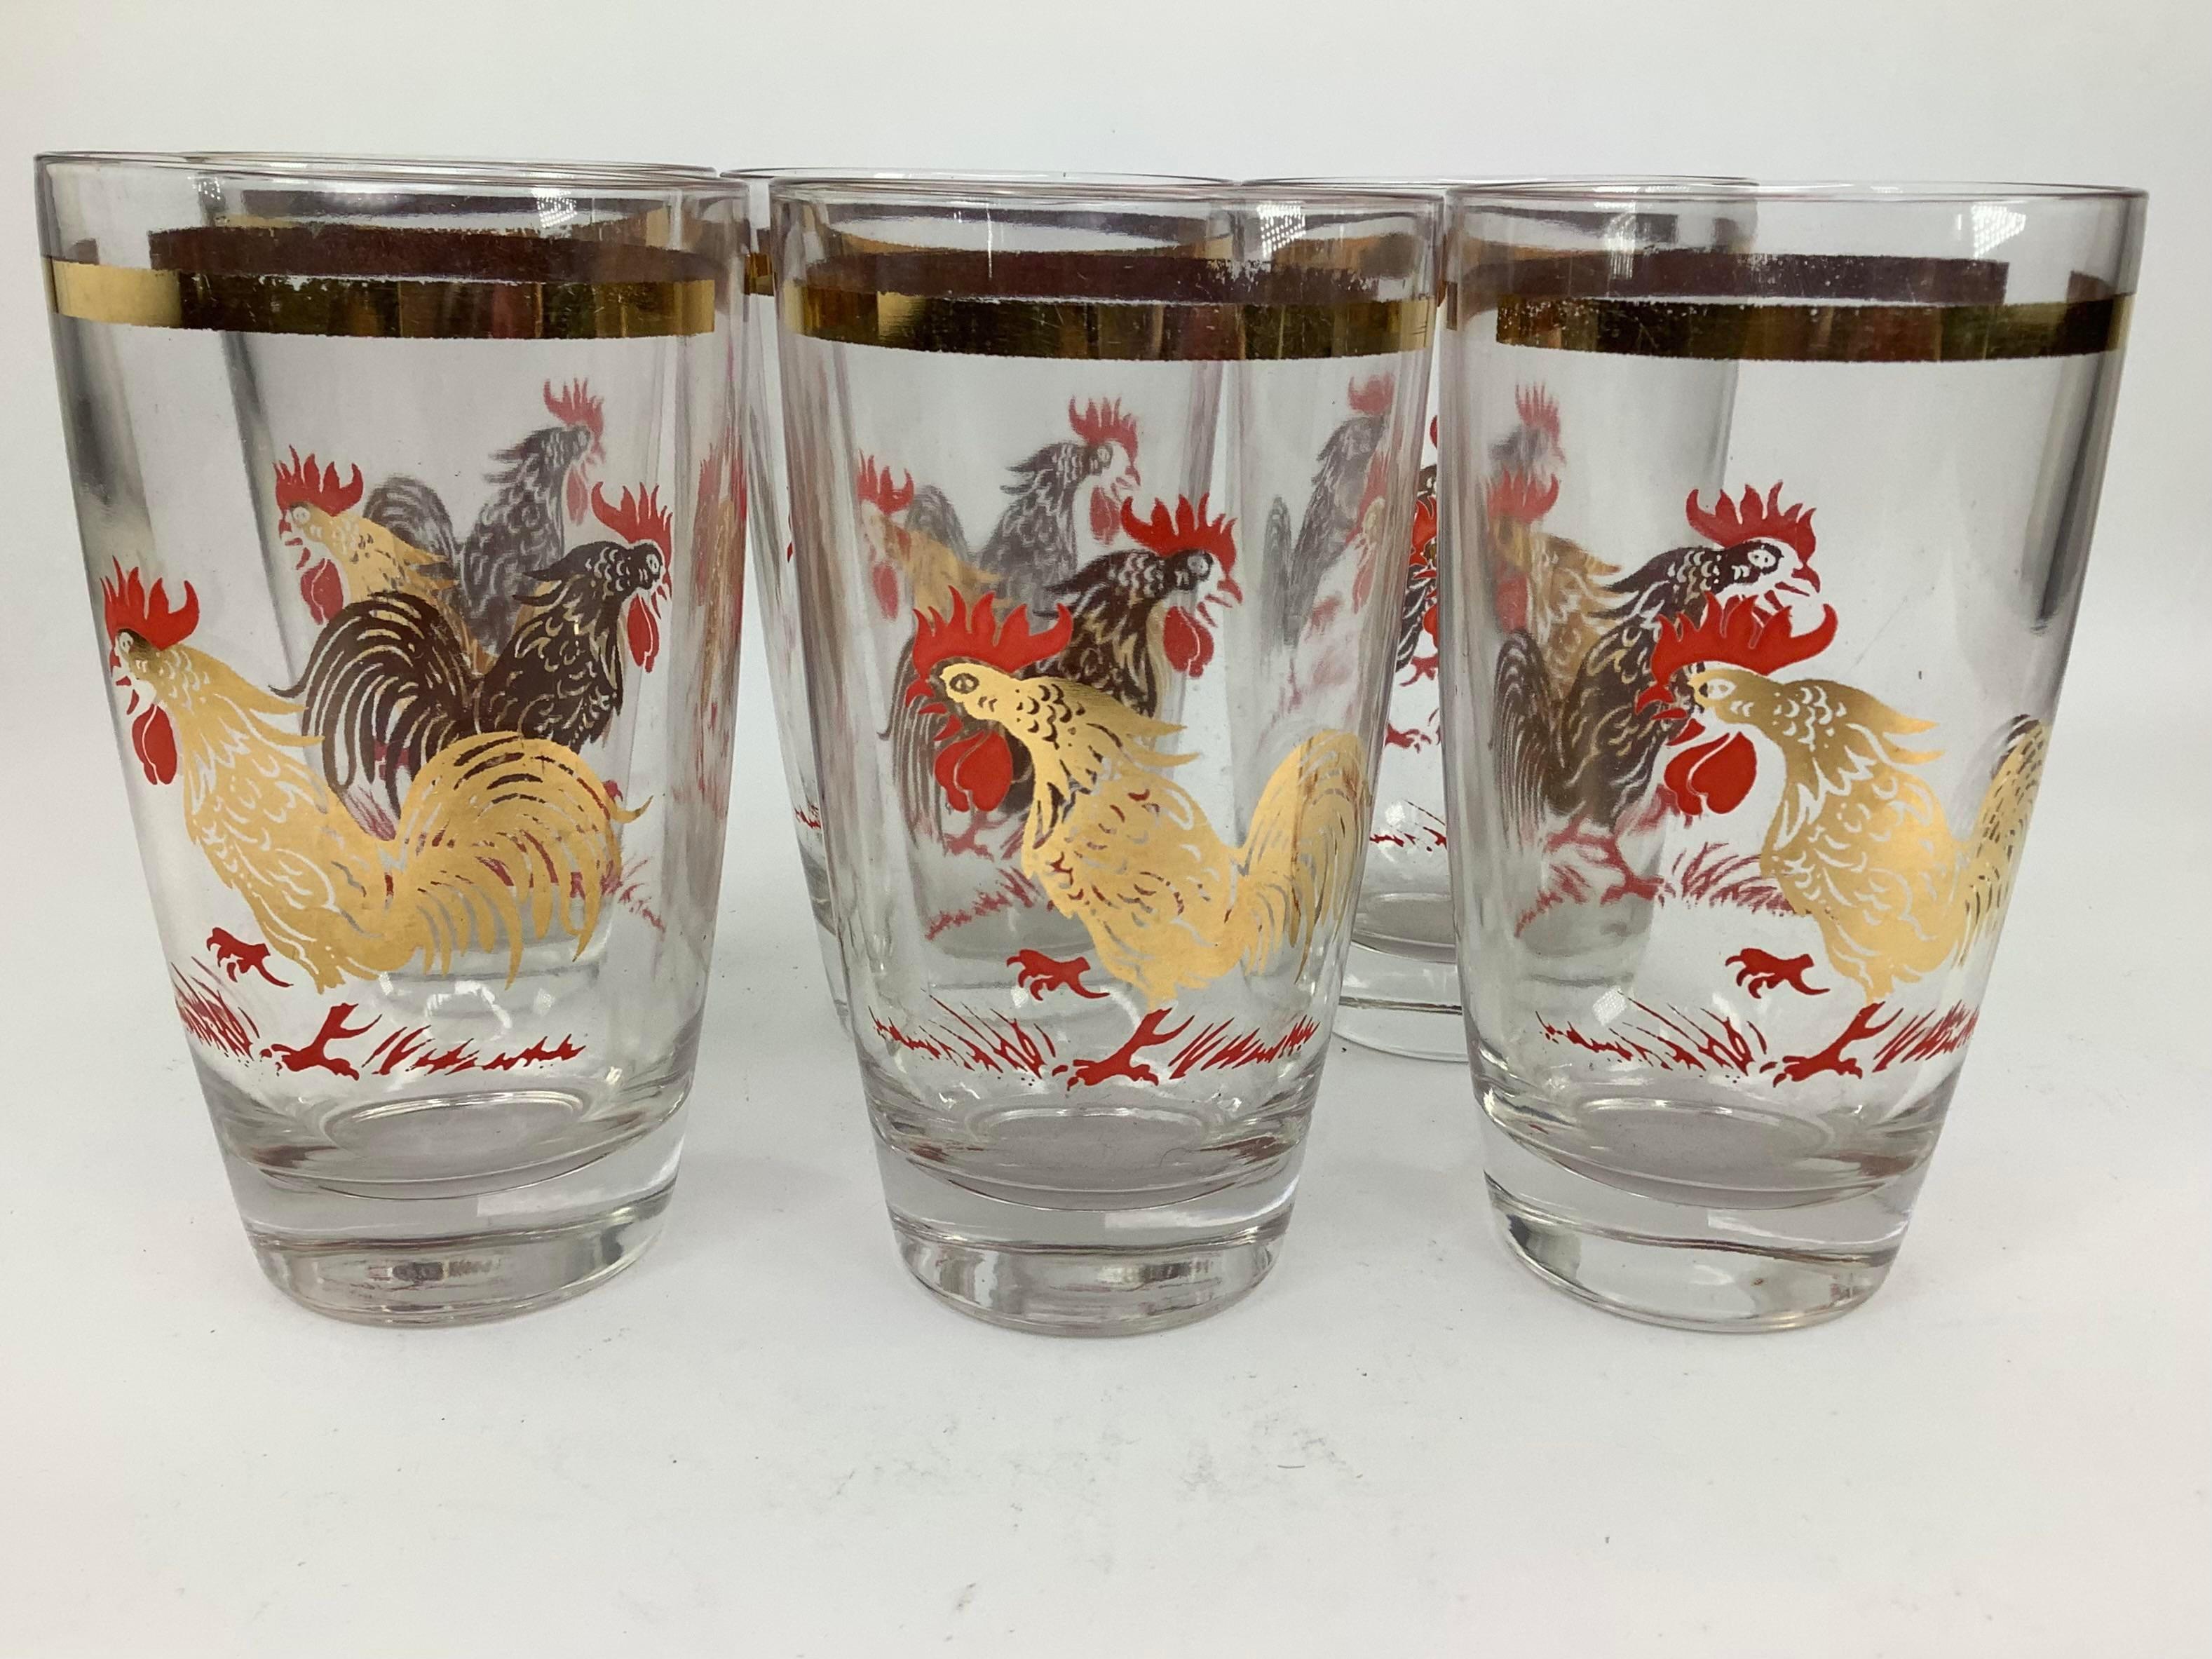 Ensemble de 6 verres Highball ou Tumblers Vintage décorés de coqs dorés chantant avec des peignes rouges et de la végétation rouge. Les verres ont une bande dorée sur le dessus. Les lunettes mesurent 5 1/4